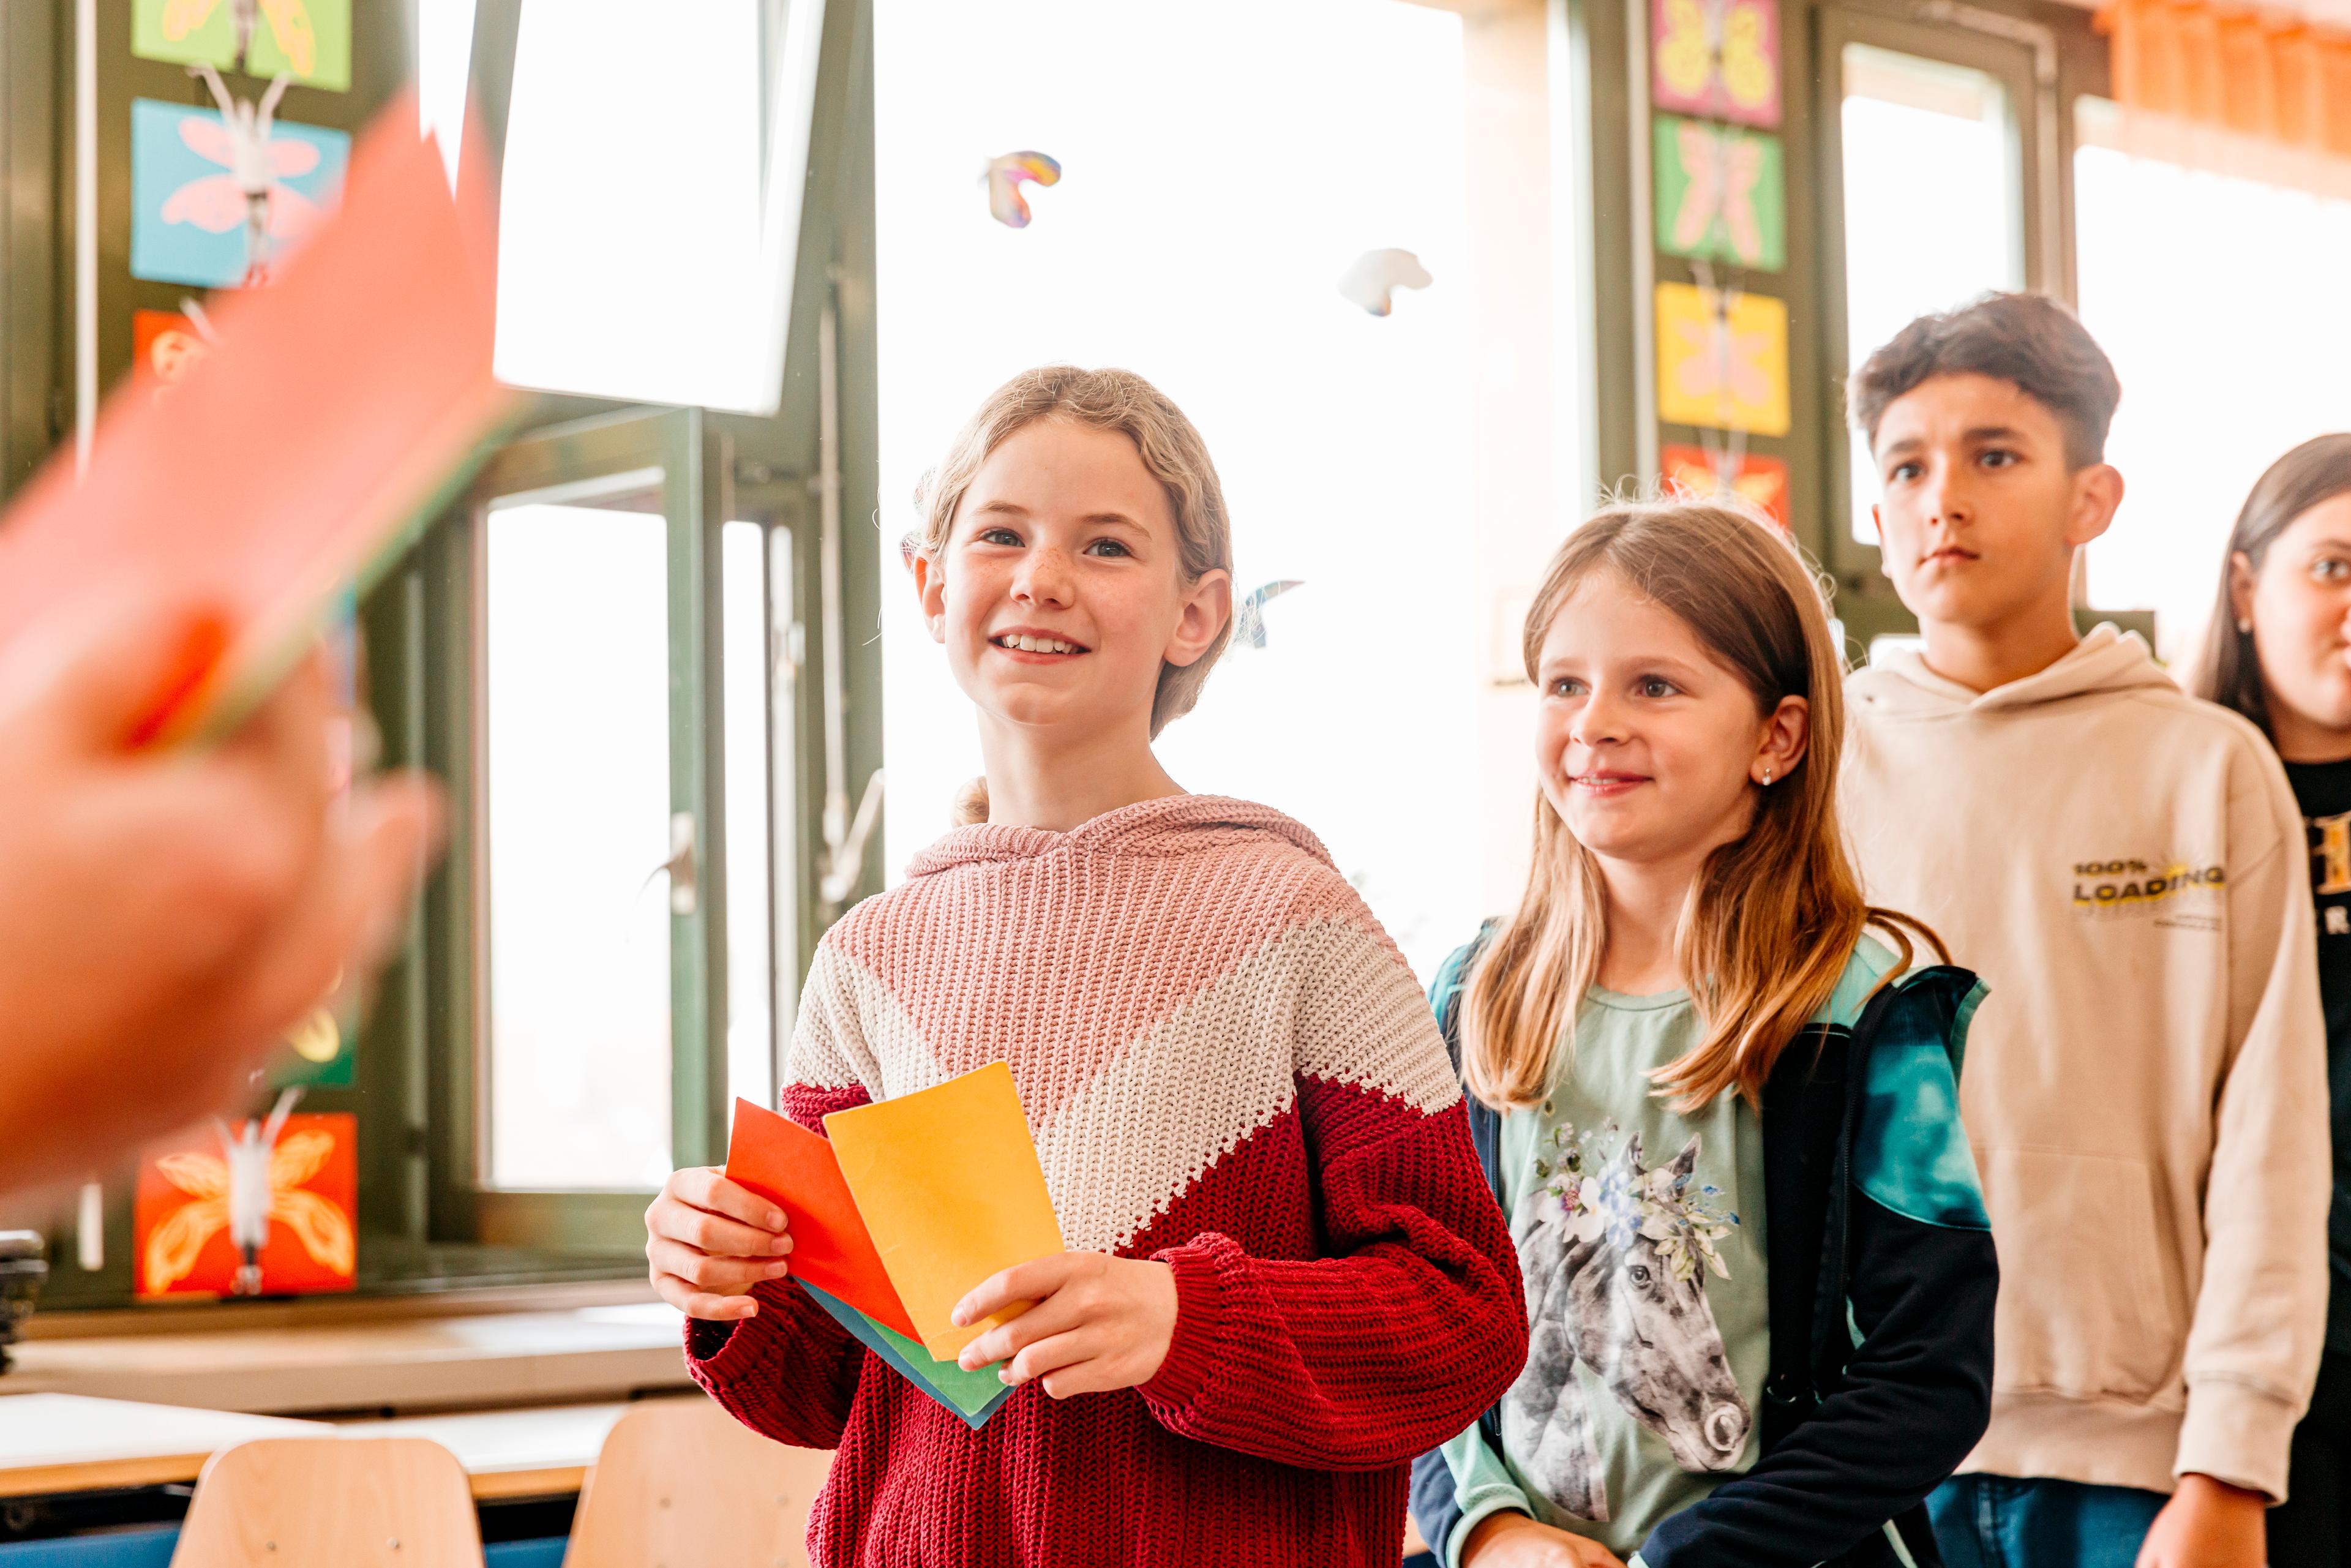 Mehrere Kinder stehen in einem Klassenzimmer in einer Reihe und machen bei einer Übung vom chili Konflikt-Training mit. Das vorderste Mädchen hält eine grüne, gelbe, rote und blaue Karte in der Hand, die sie in die Höhe strecken kann. 